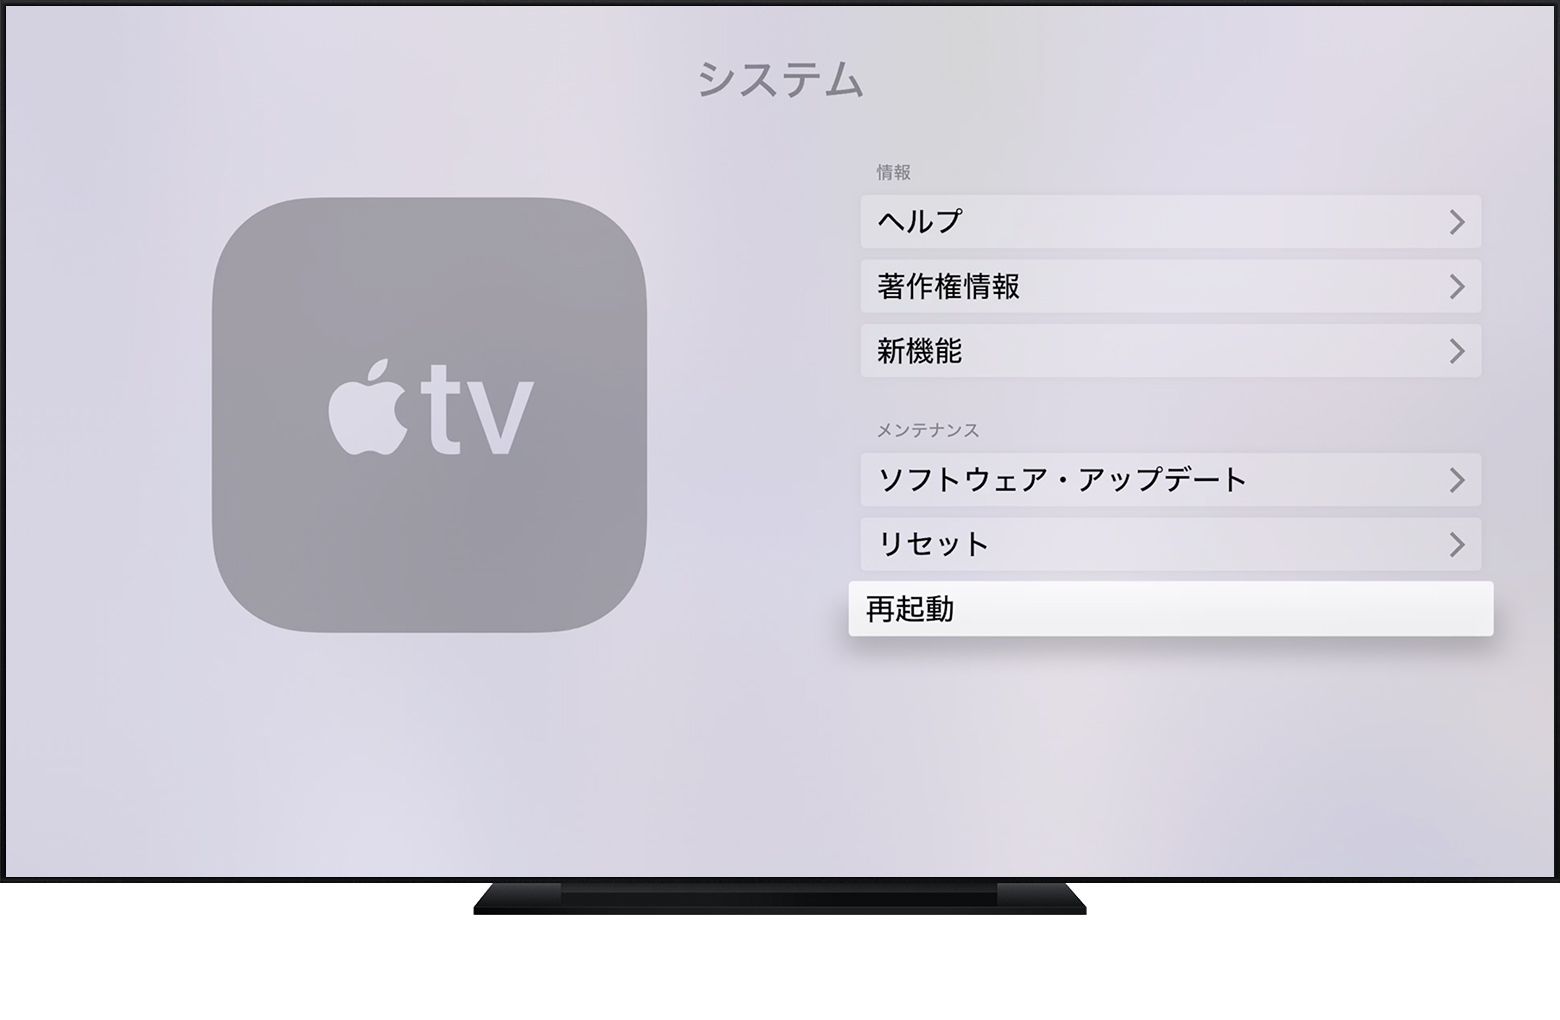 Apple Tv App Itunes Store 他社製の App から映画やテレビ番組をストリーミング 視聴できない場合 Apple サポート